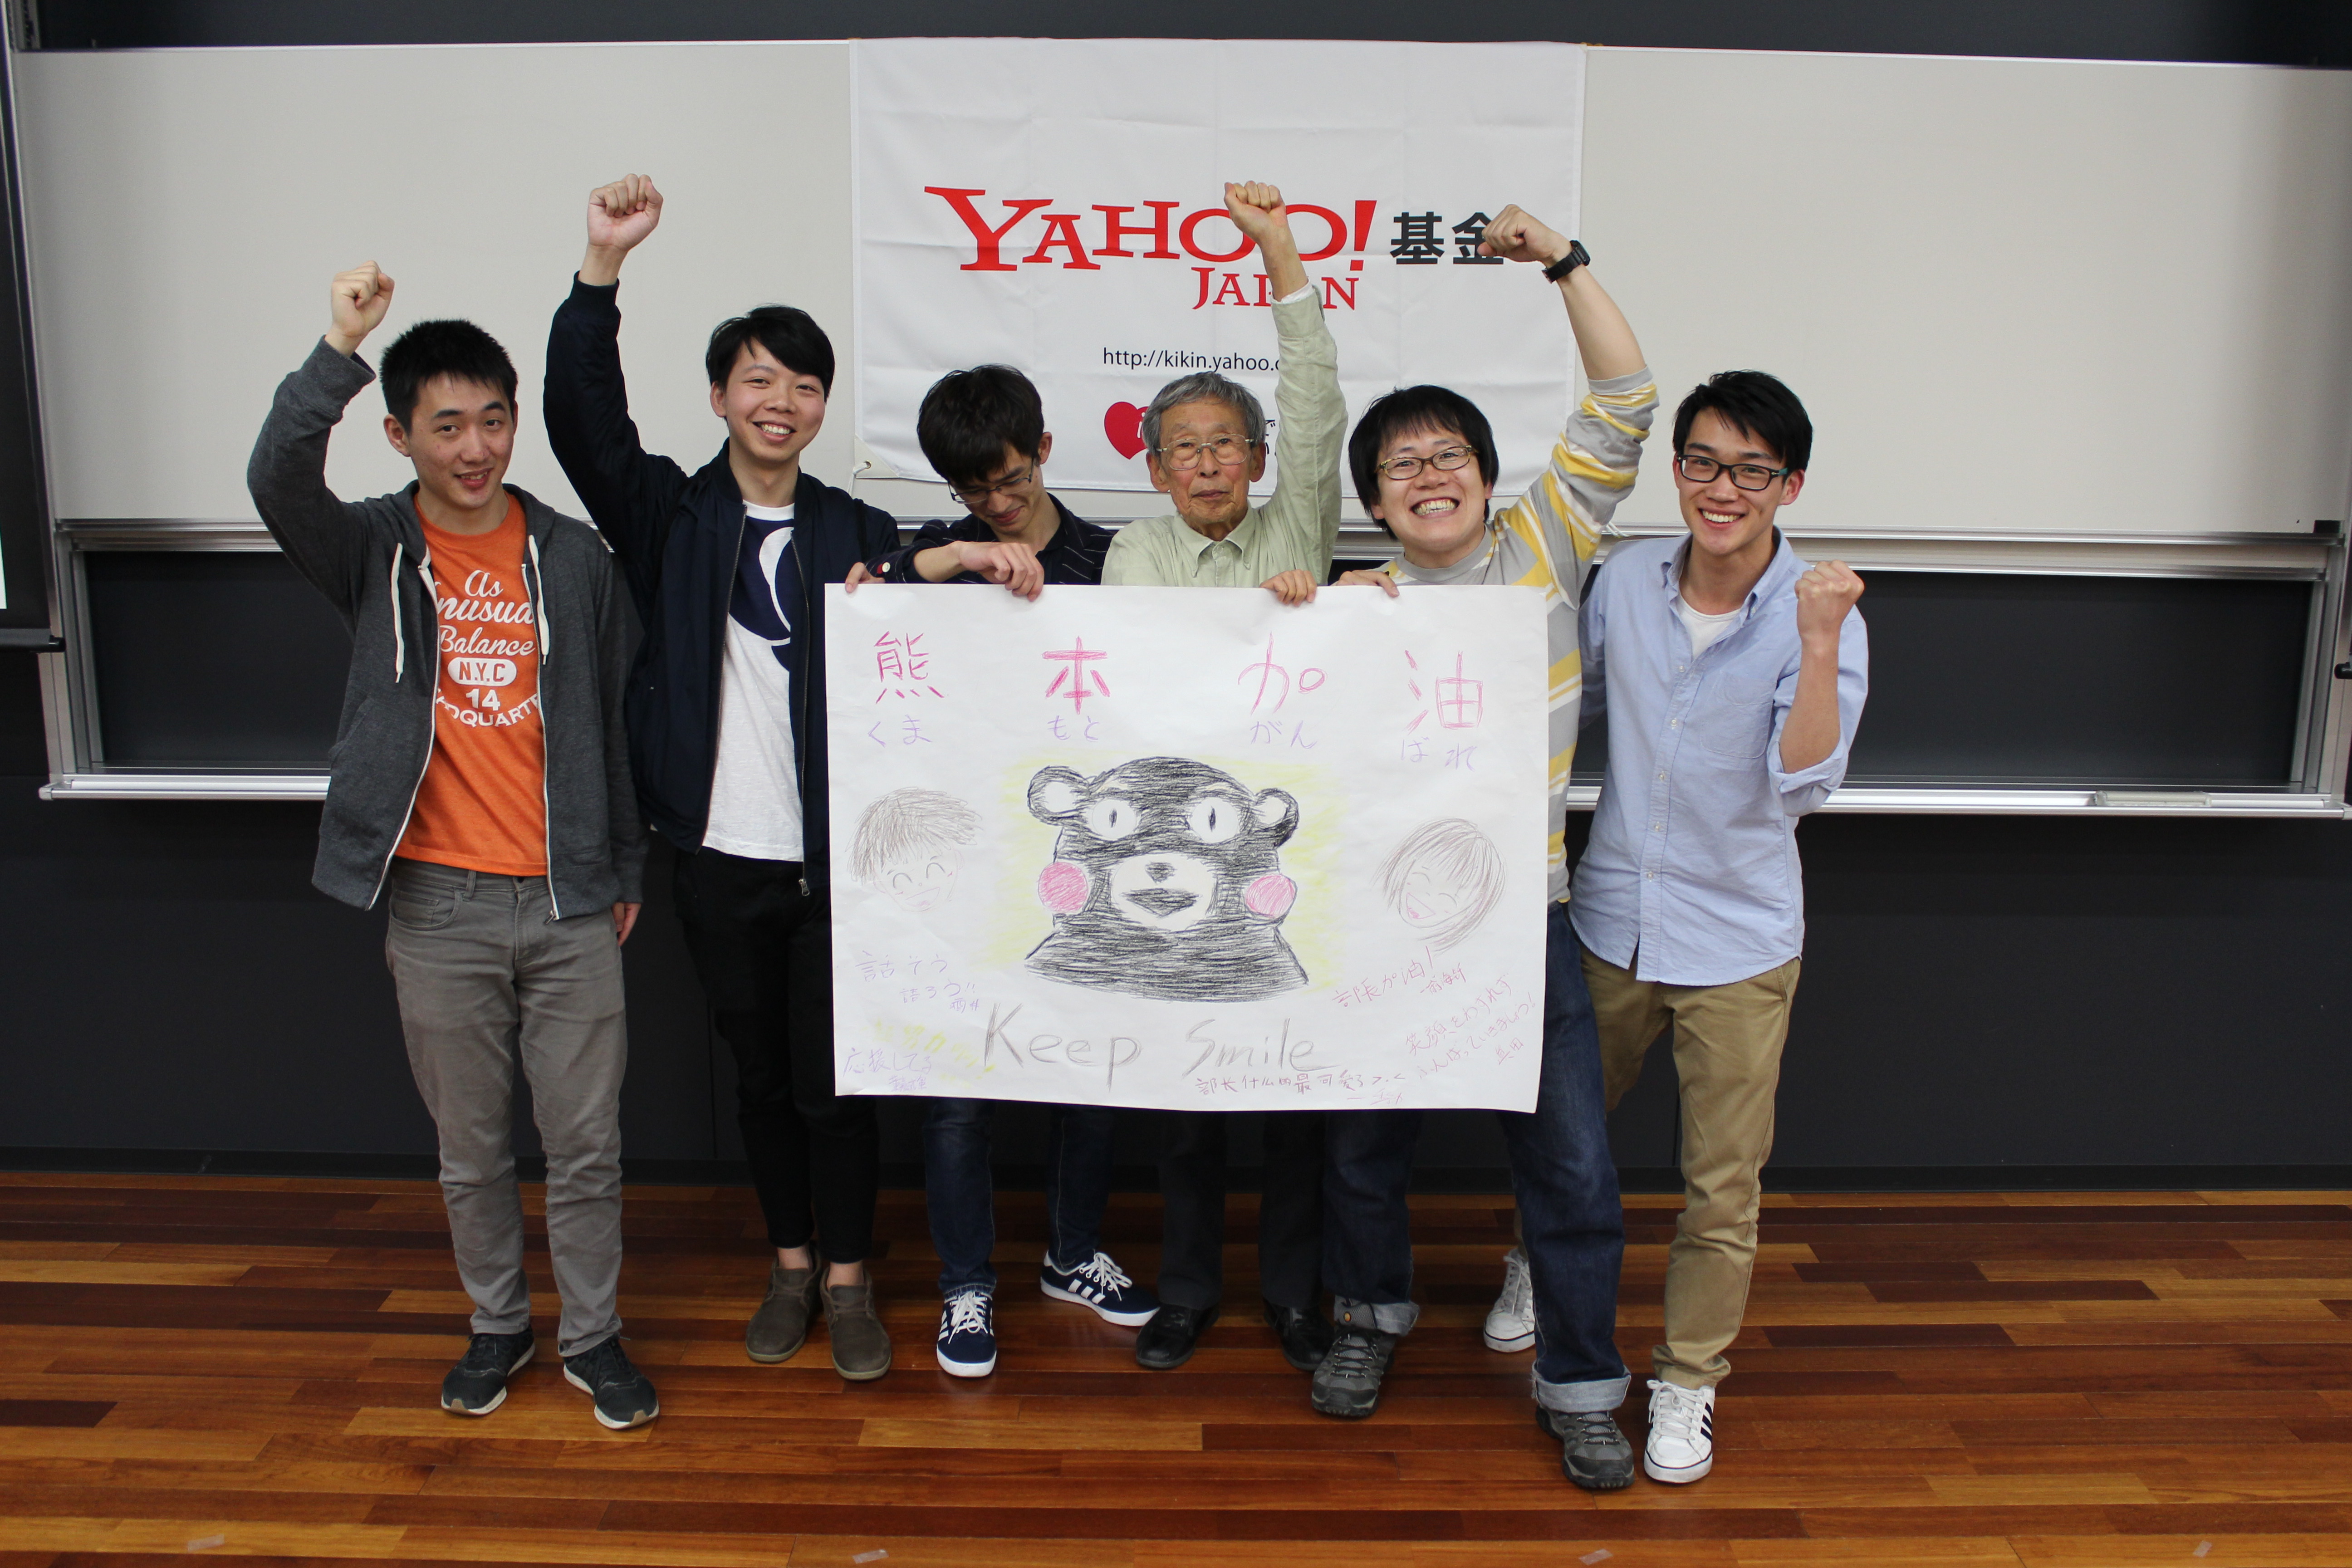 となりのくまモン!? ボランティア団体が教える、熊本のためにする「はじめの一歩」とは【学生記者】